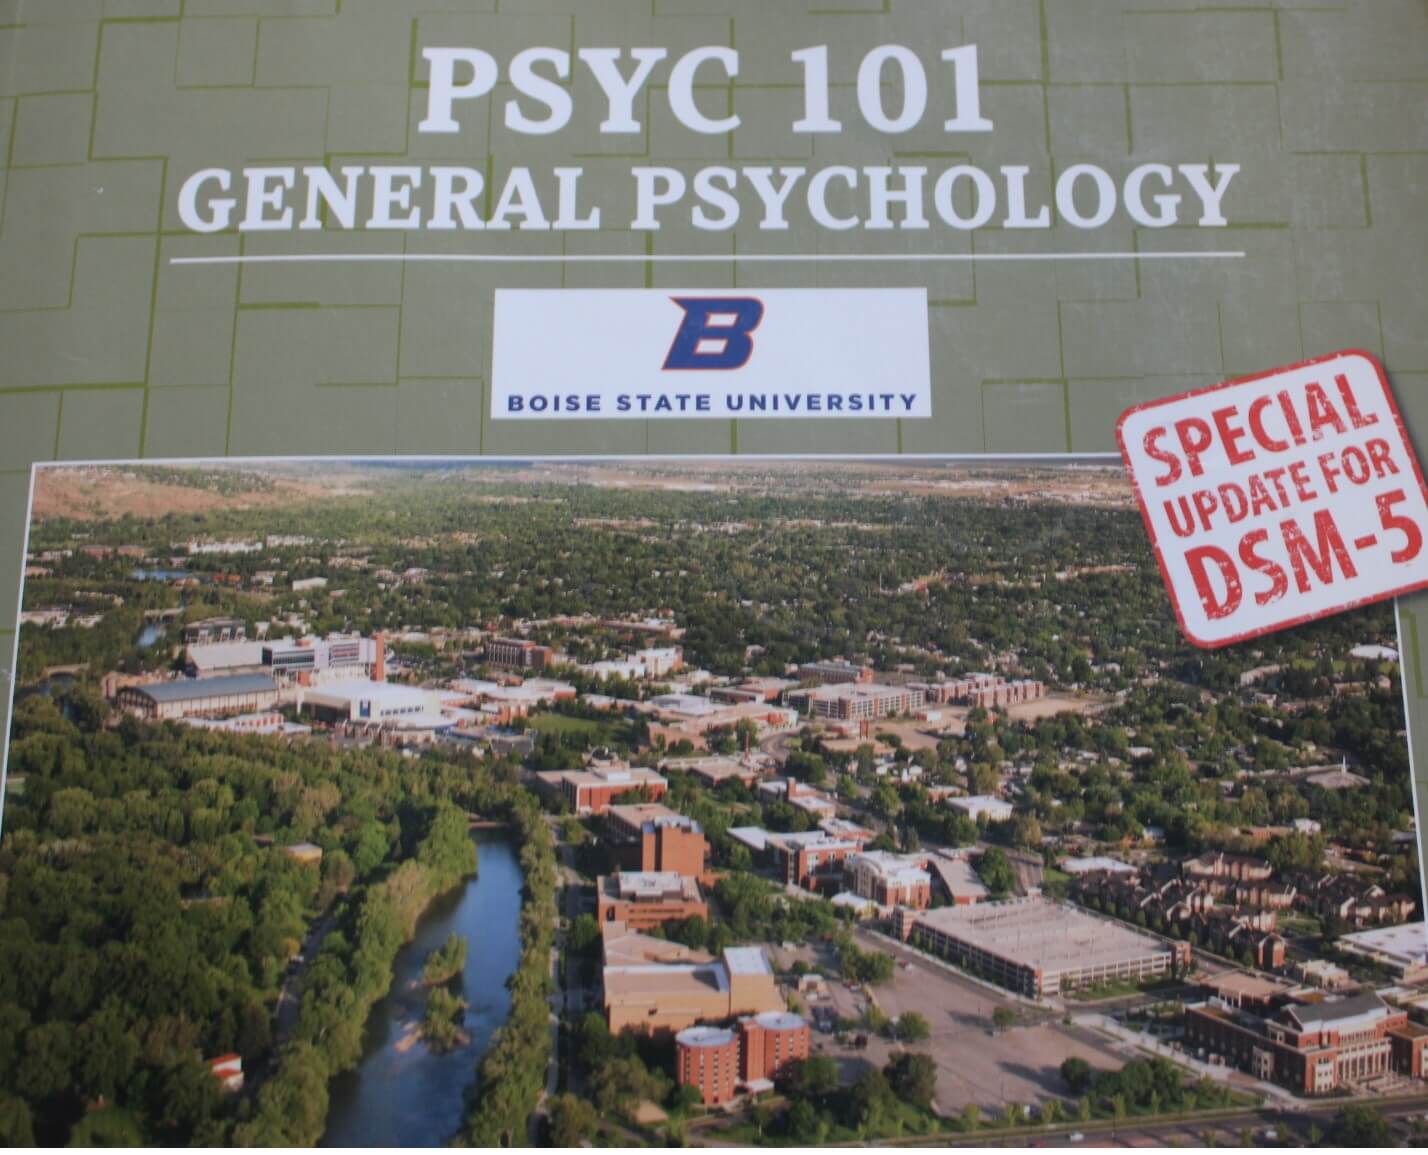 PSYC 101 General Psychology Boise State University